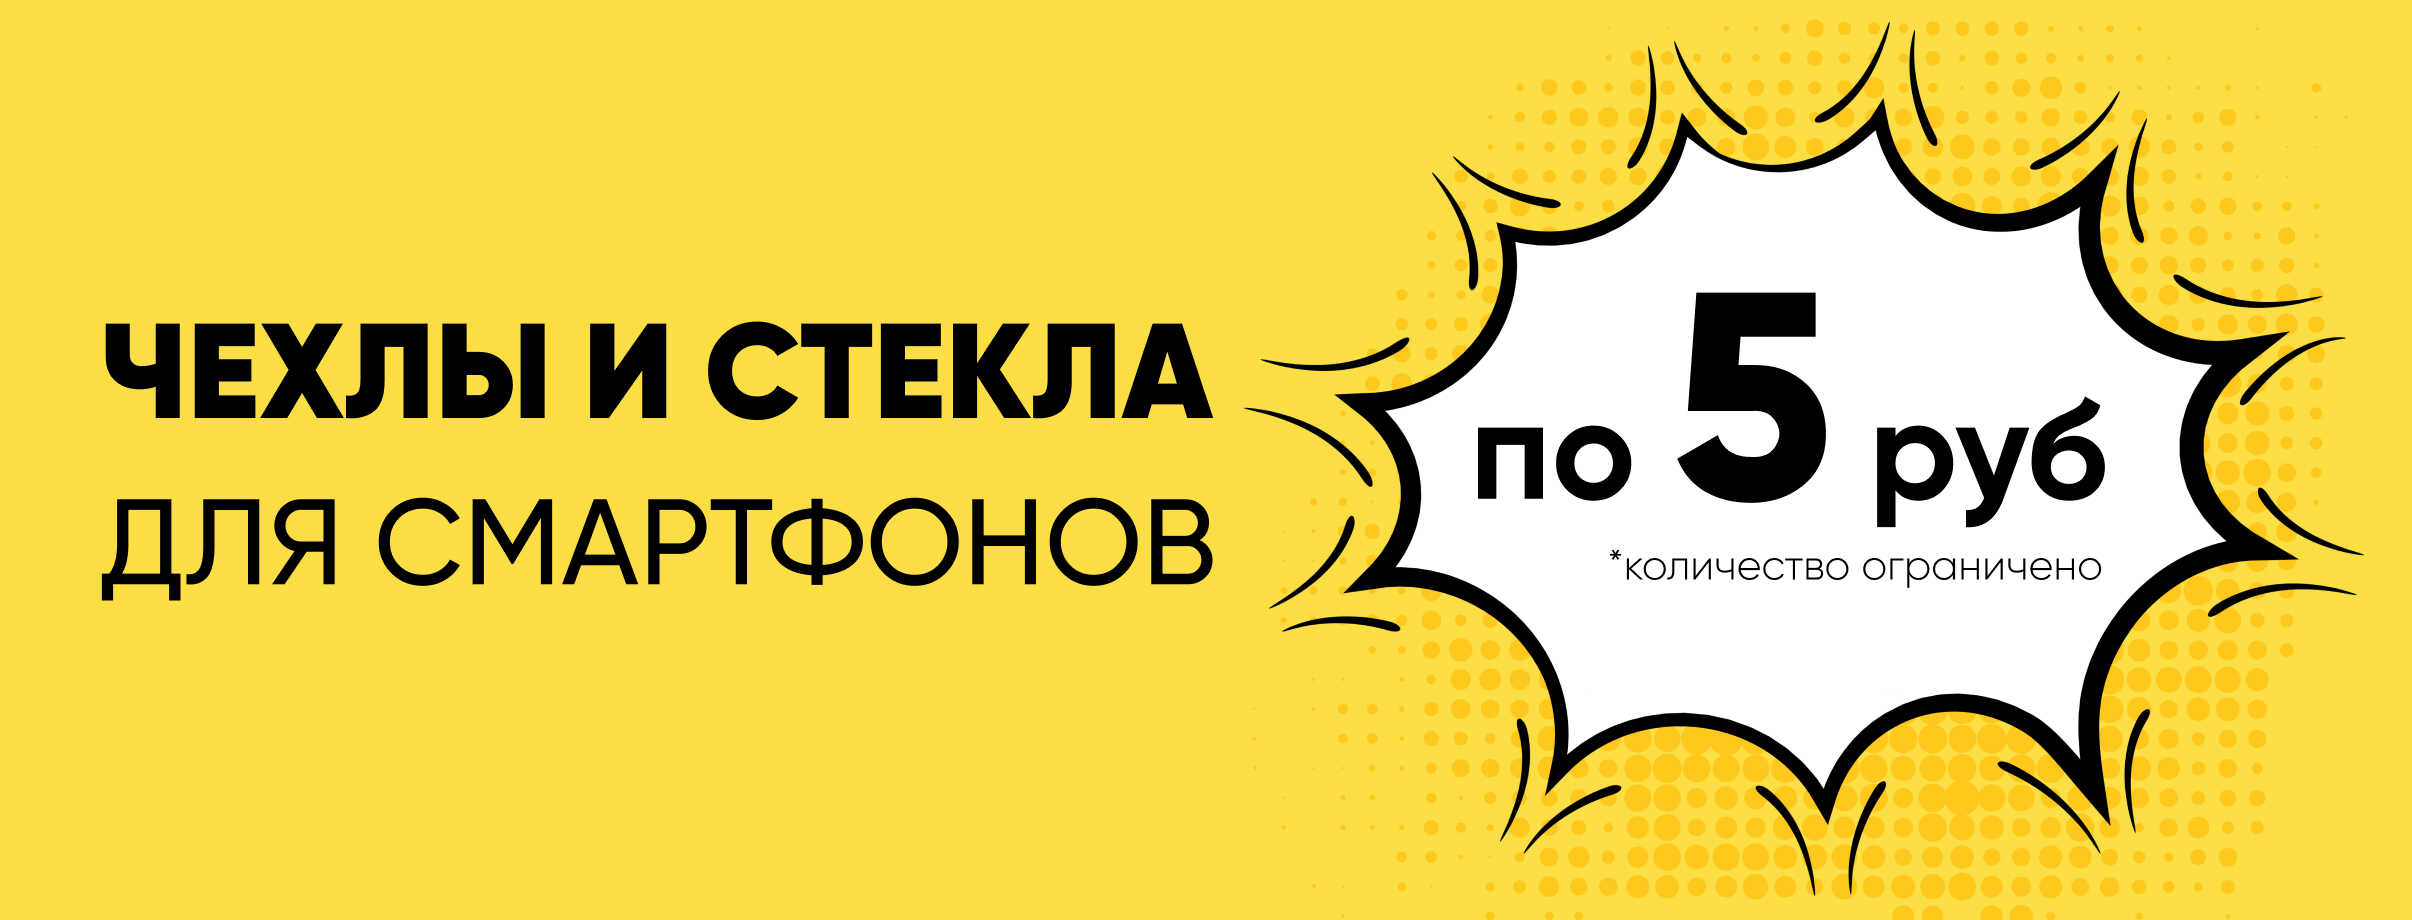 🛡 Чехлы и стекла на смартфоны по 5 рубля